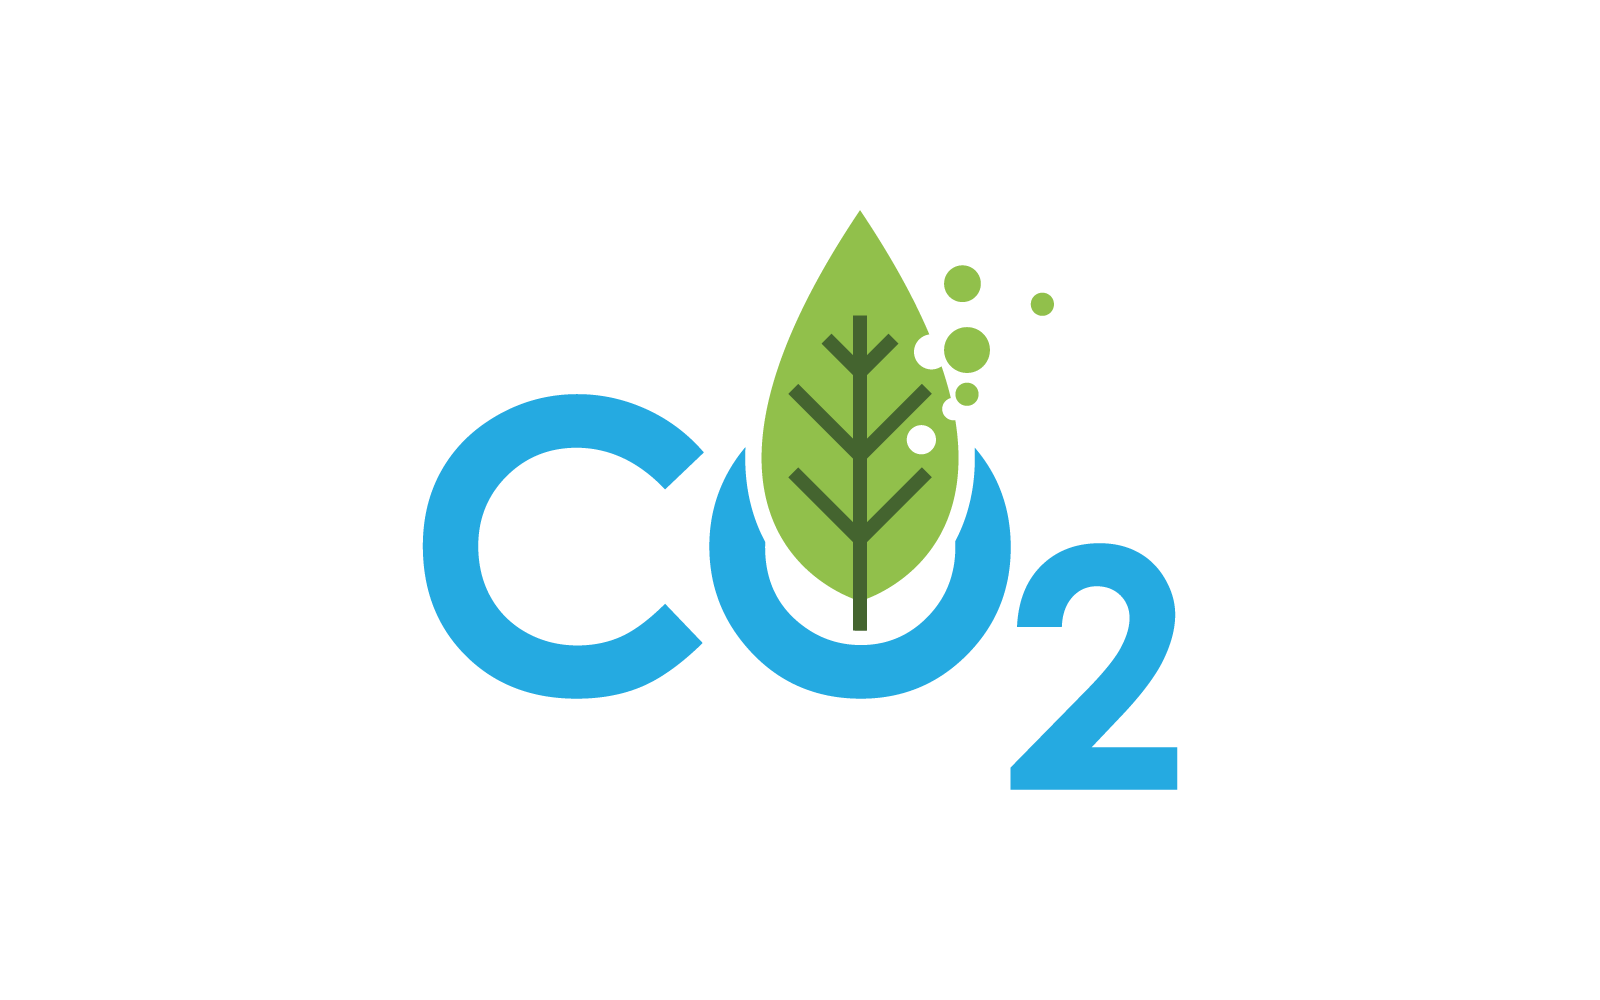 Co2 Carbon dioxide logo icon vector design Logo Template